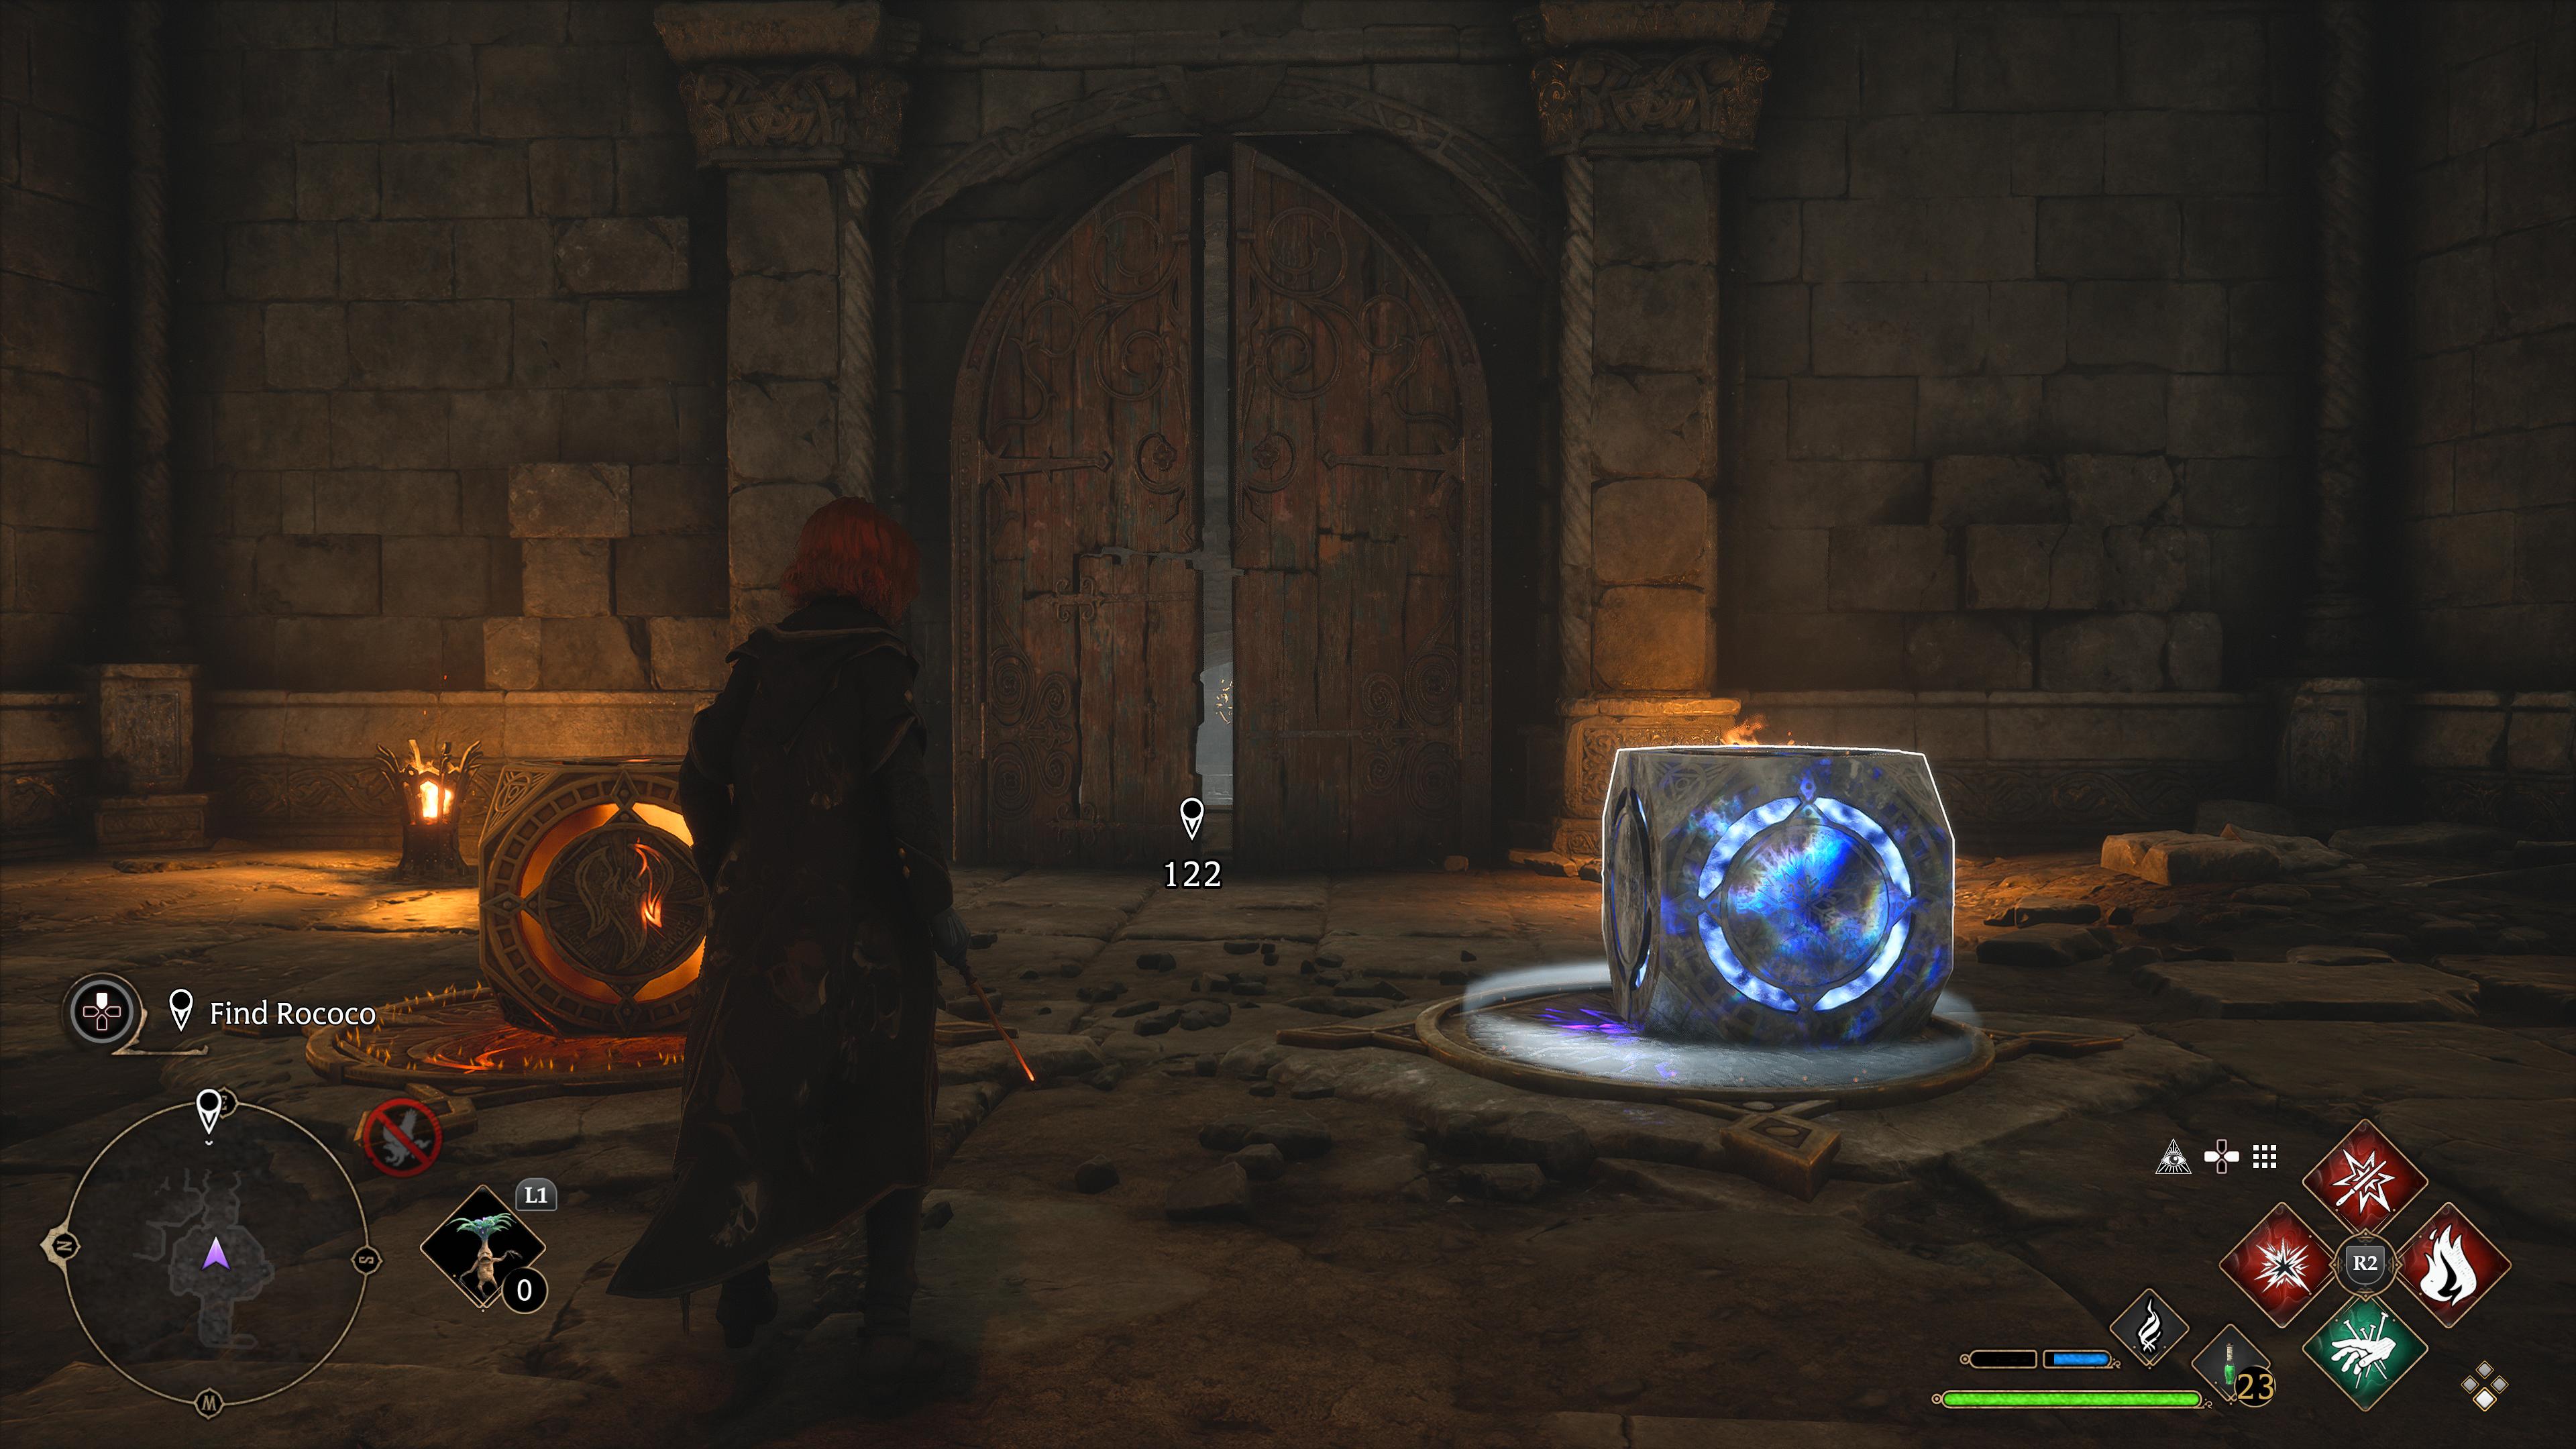 yapboz ateş ve buz küpü önünde duran hogwarts mirası